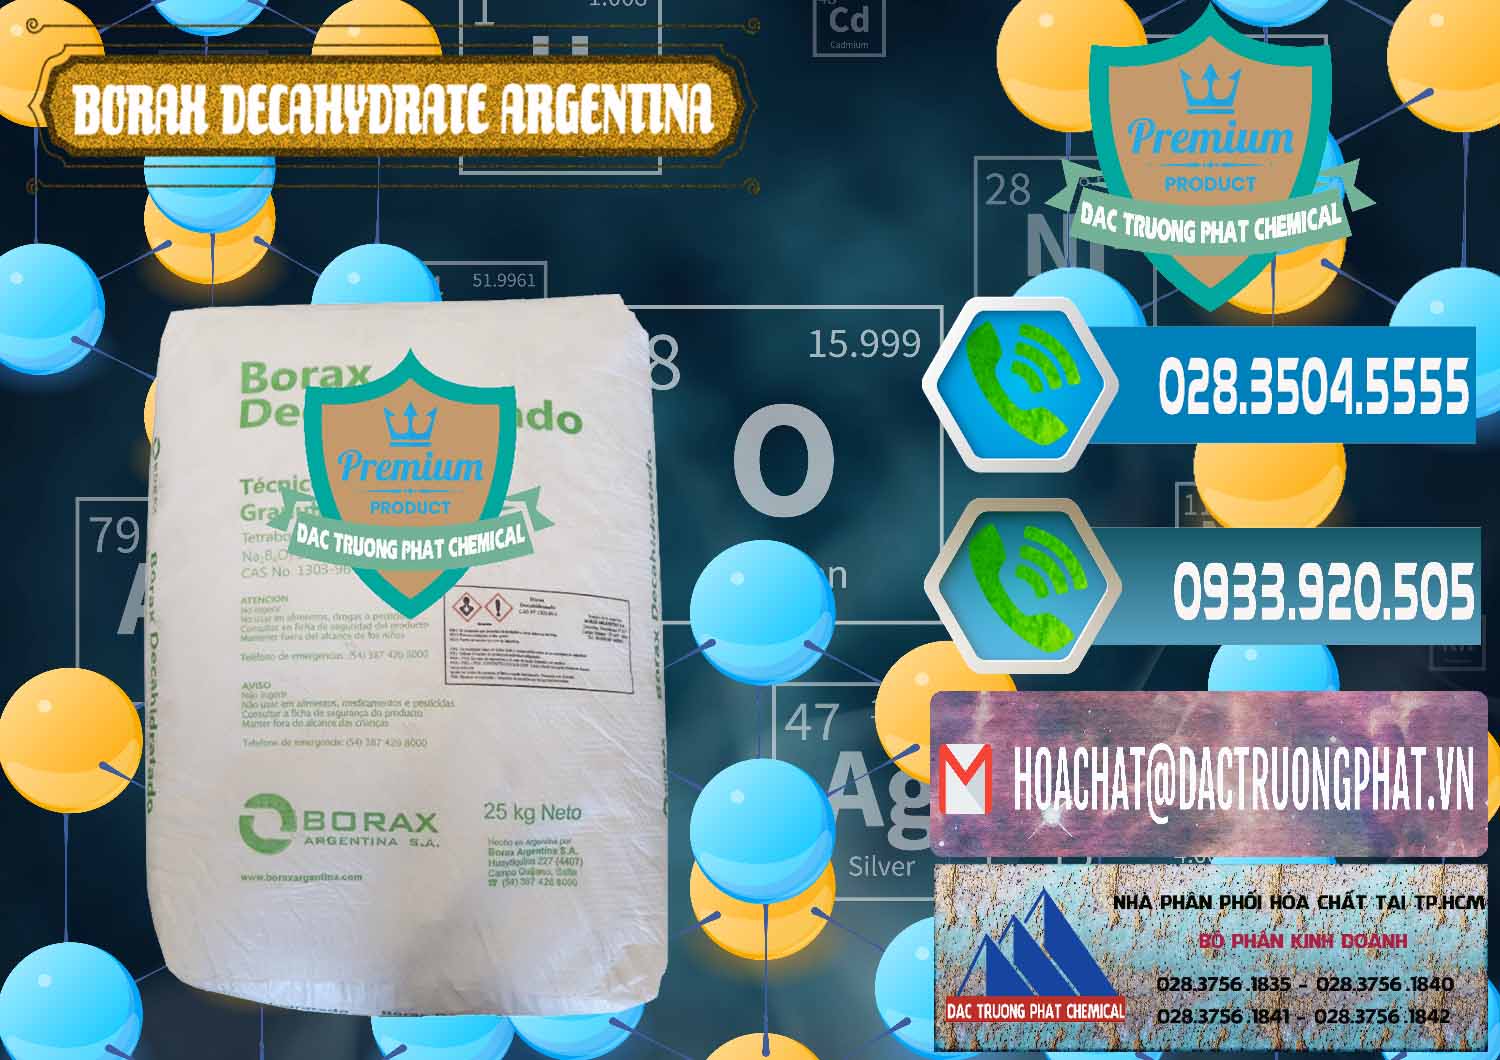 Cty chuyên bán & phân phối Borax Decahydrate Argentina - 0446 - Bán ( phân phối ) hóa chất tại TP.HCM - congtyhoachat.net